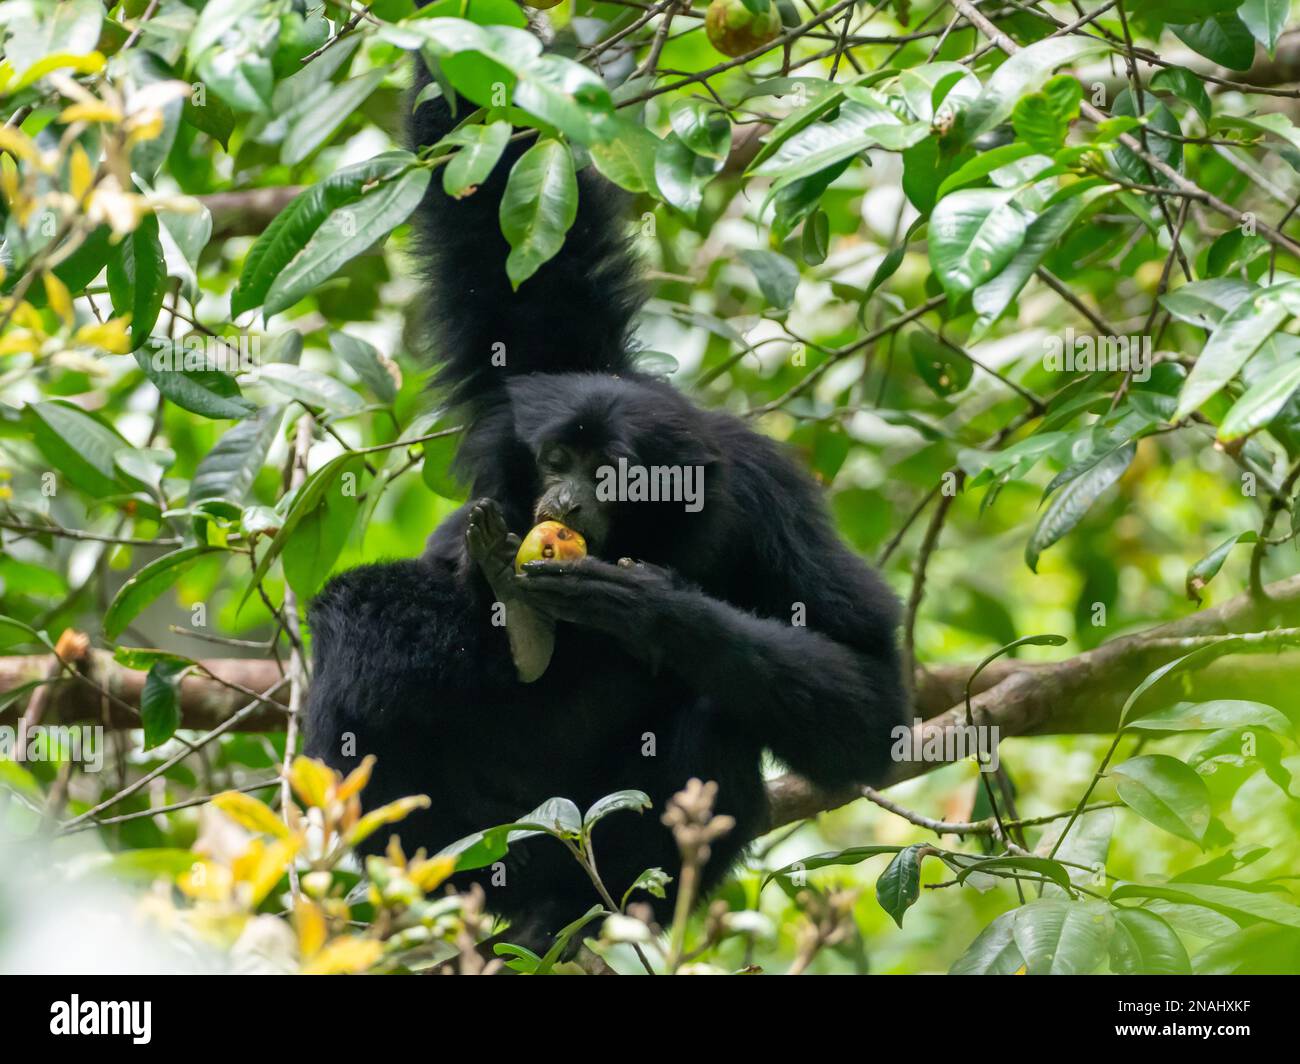 Siamang, Symphalangus syndactylus, il più grande di tutti i gibboni, e specie minacciate trovate in Malesia Foto Stock